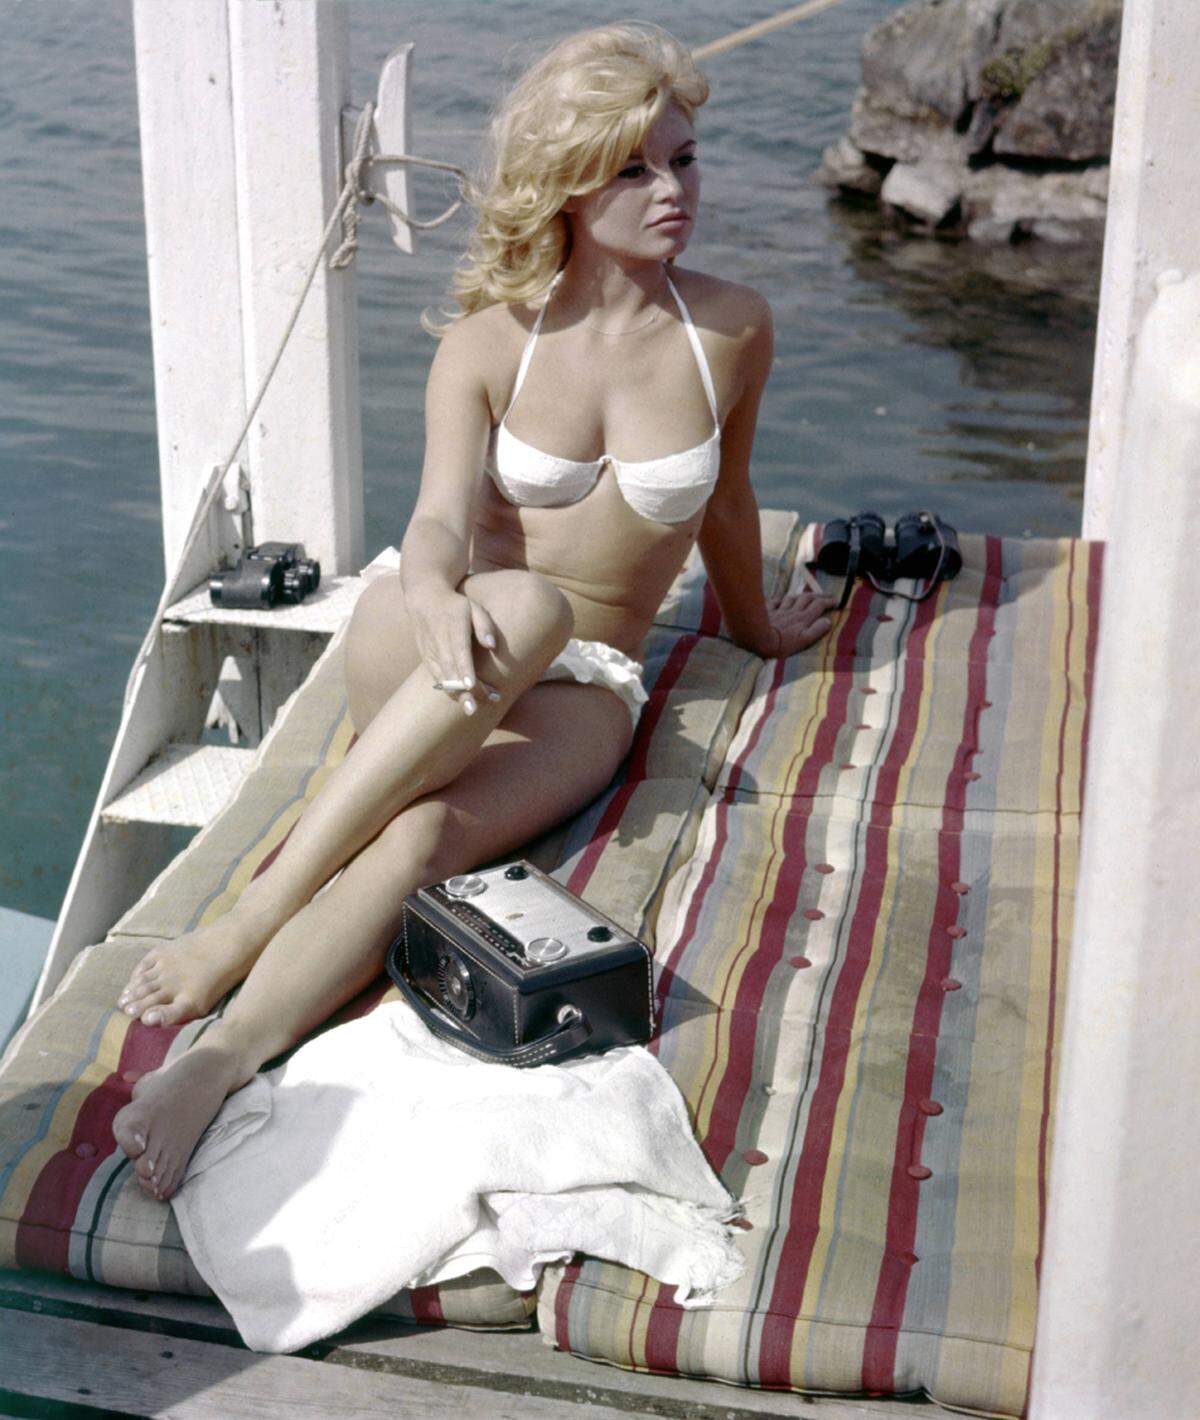 Brigitte Bardot hat bereits 1952 im Film "The Girl in a Bikini" den Zweiteiler salonfähig gemacht. Zehn Jahre später verhalft sie dem Bikini zum Durchbruch.